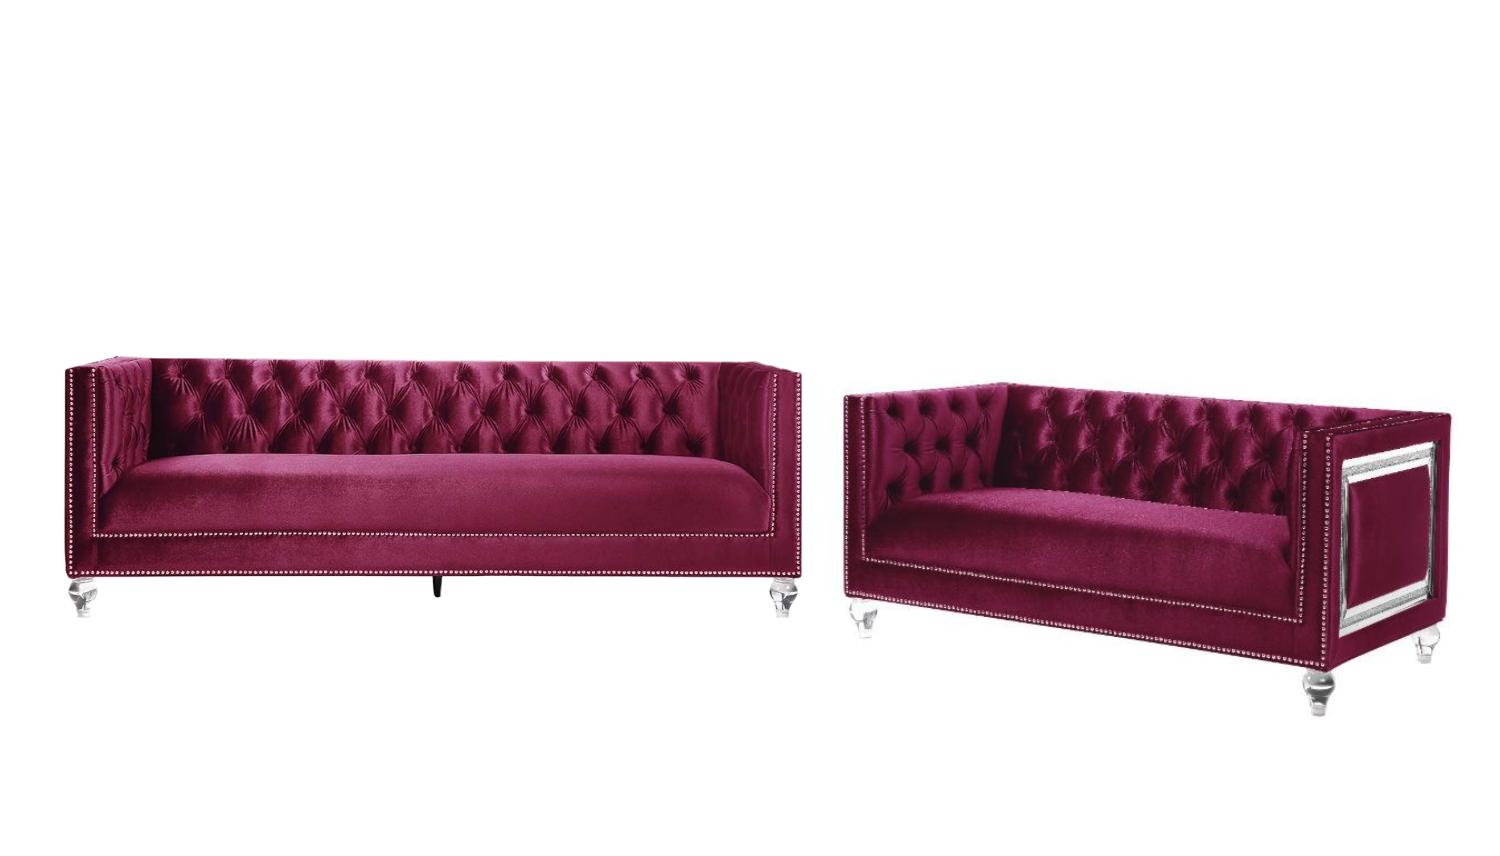 Classic Sofa and Loveseat Set Heibero LV01400-2pcs in Burgundy Velvet